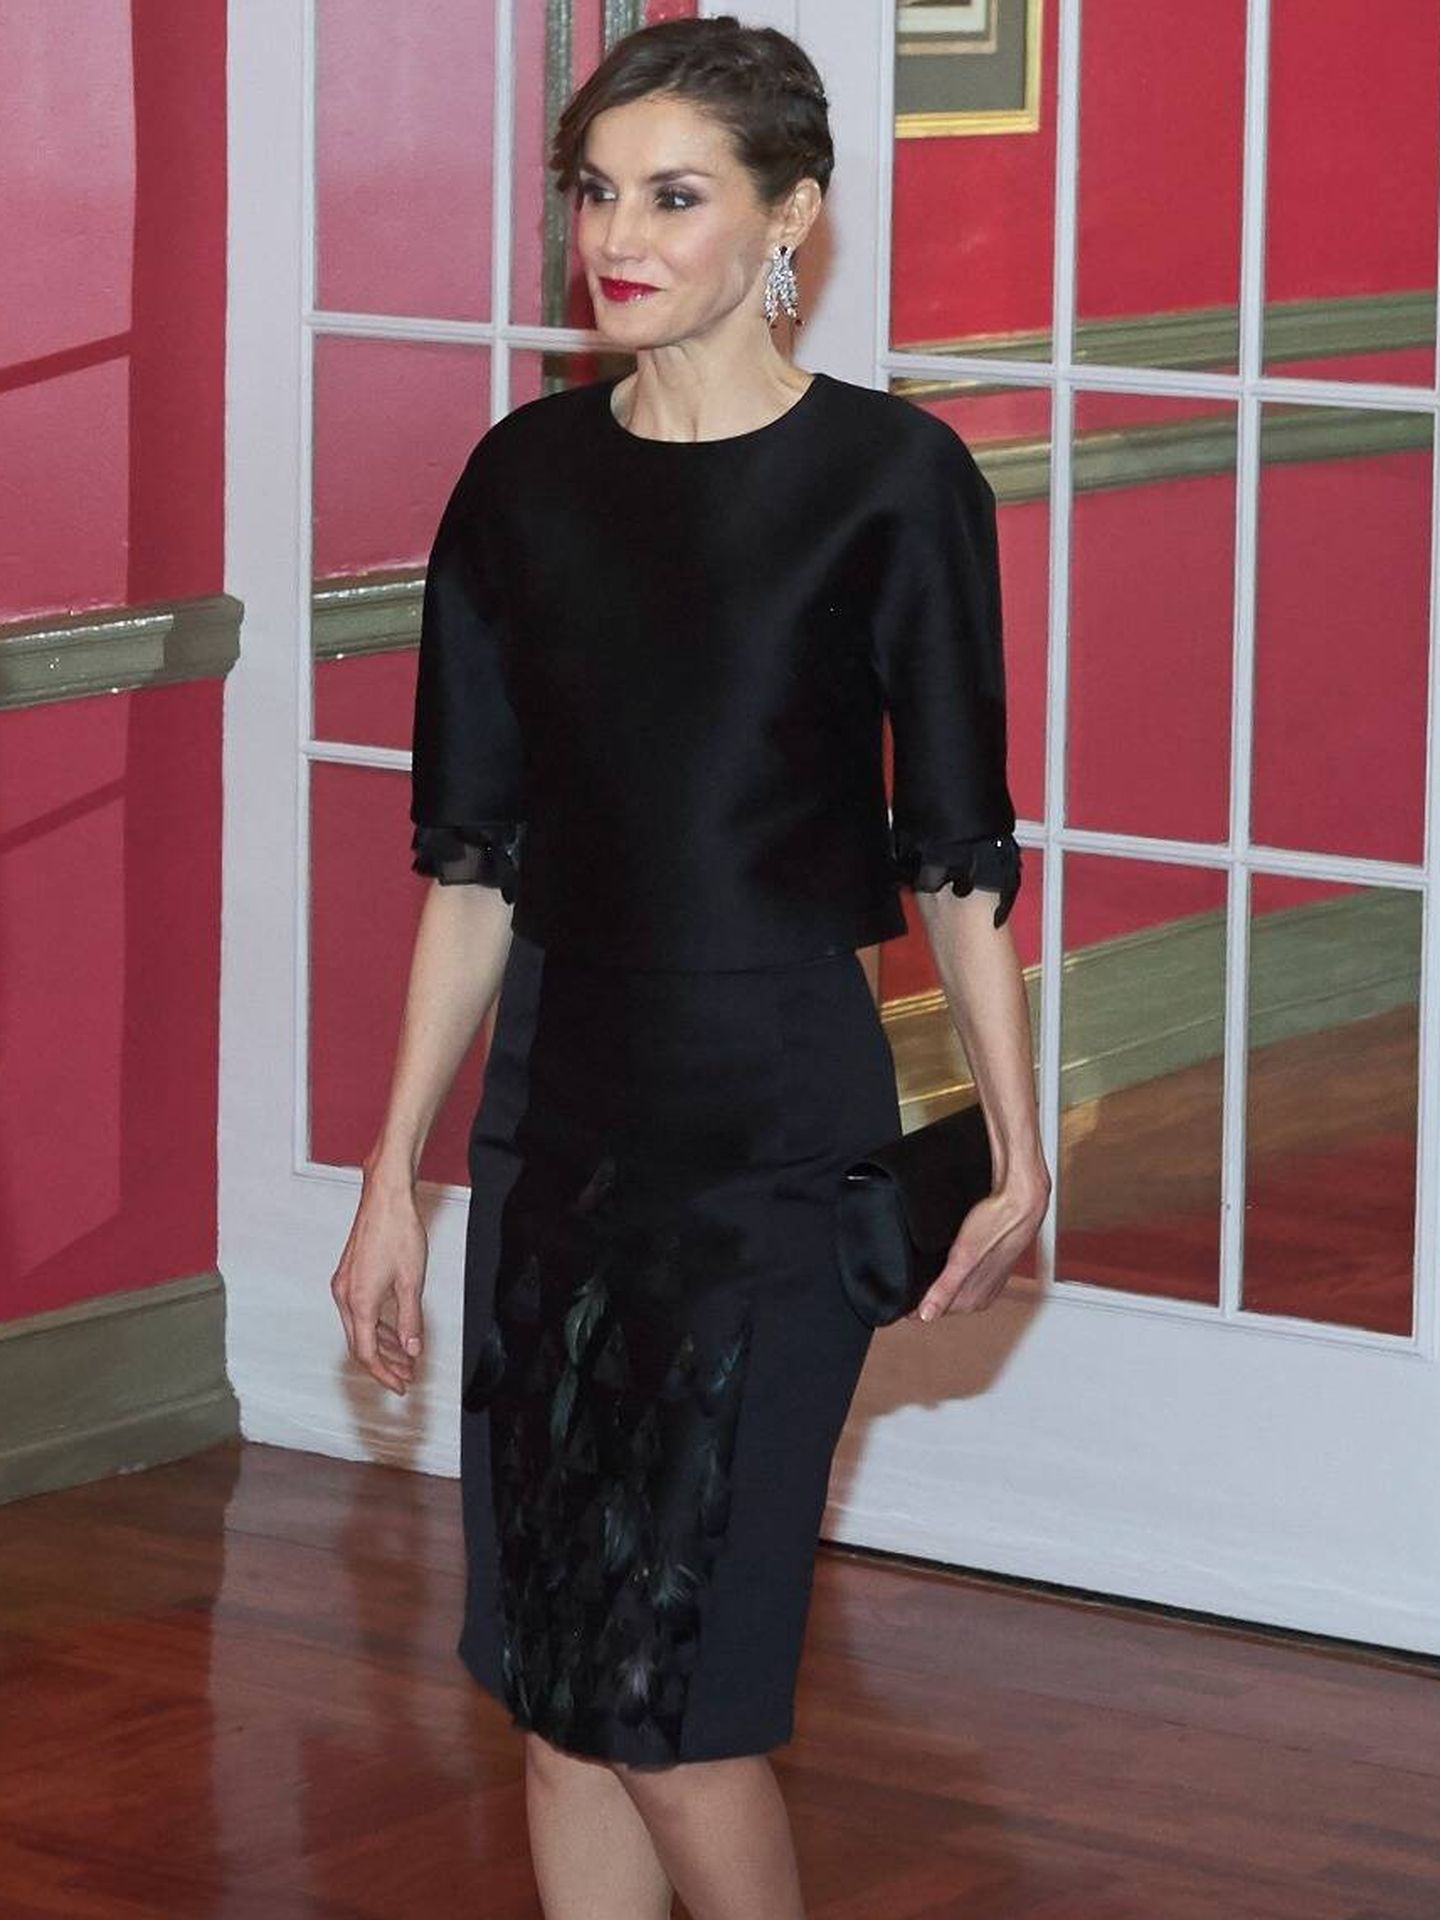 La reina Letizia, el 7 de febrero de 2017. (Getty/Carlos Álvarez)